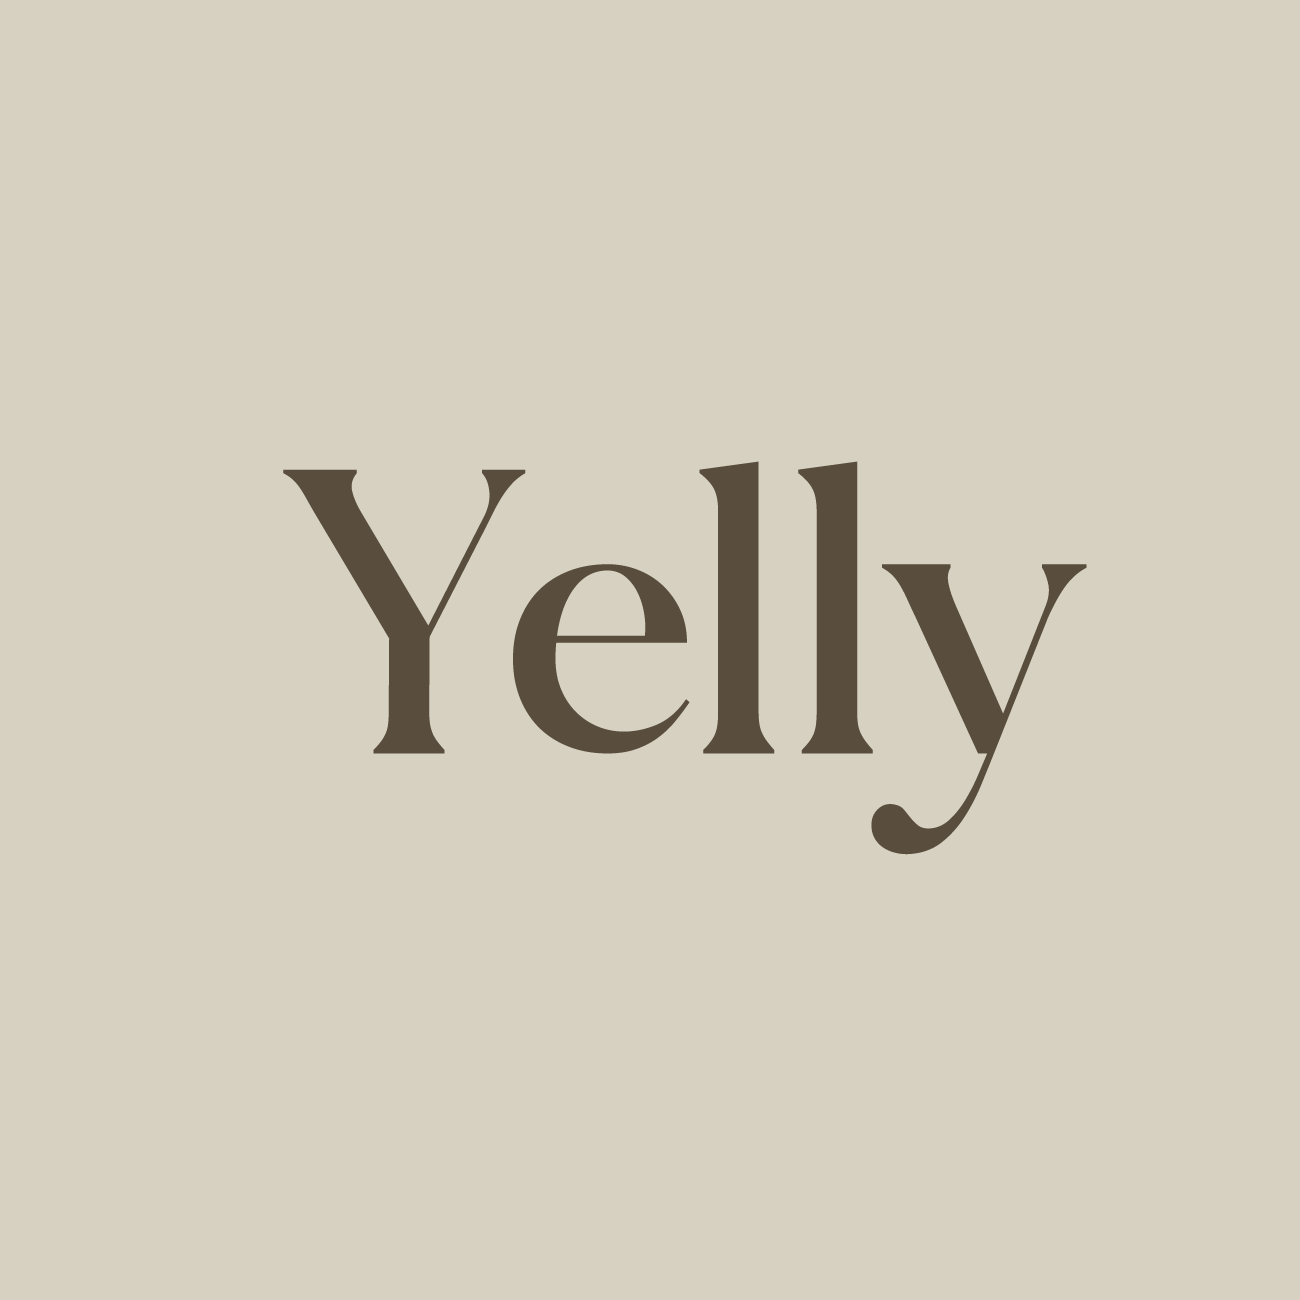 옐리 | Yelly님의 프로필 사진